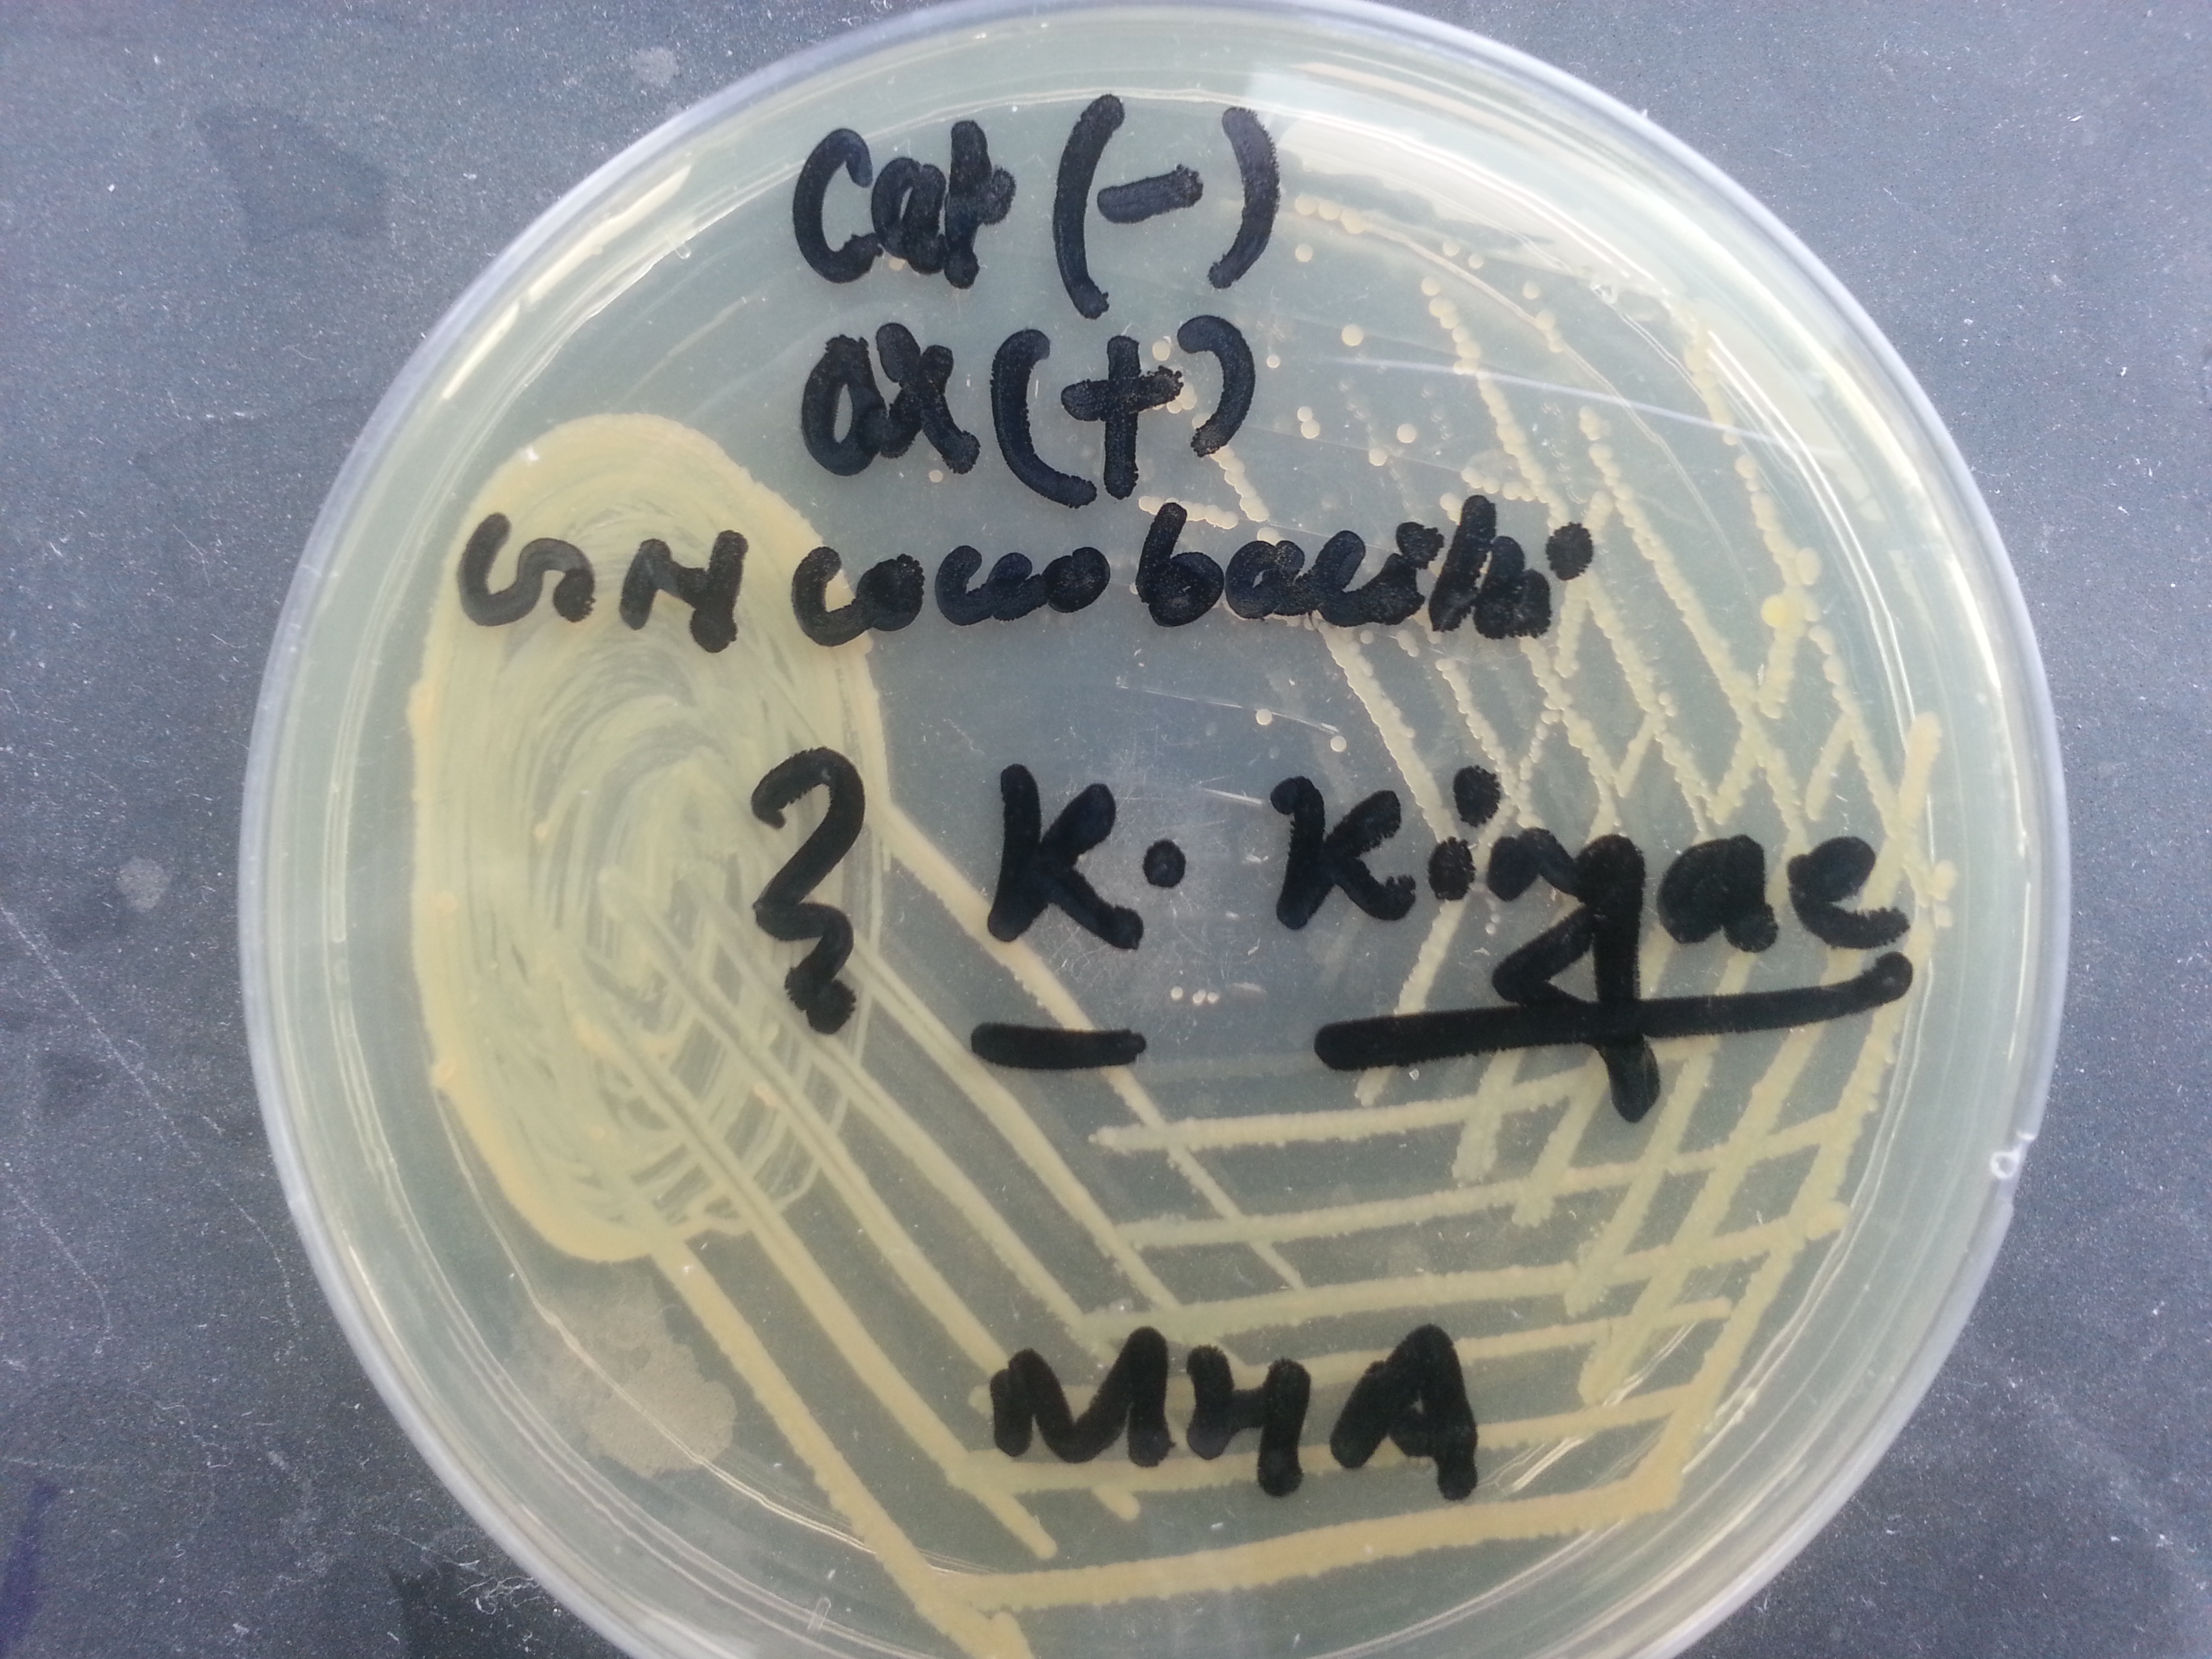 K. kingae growth on MHA agar